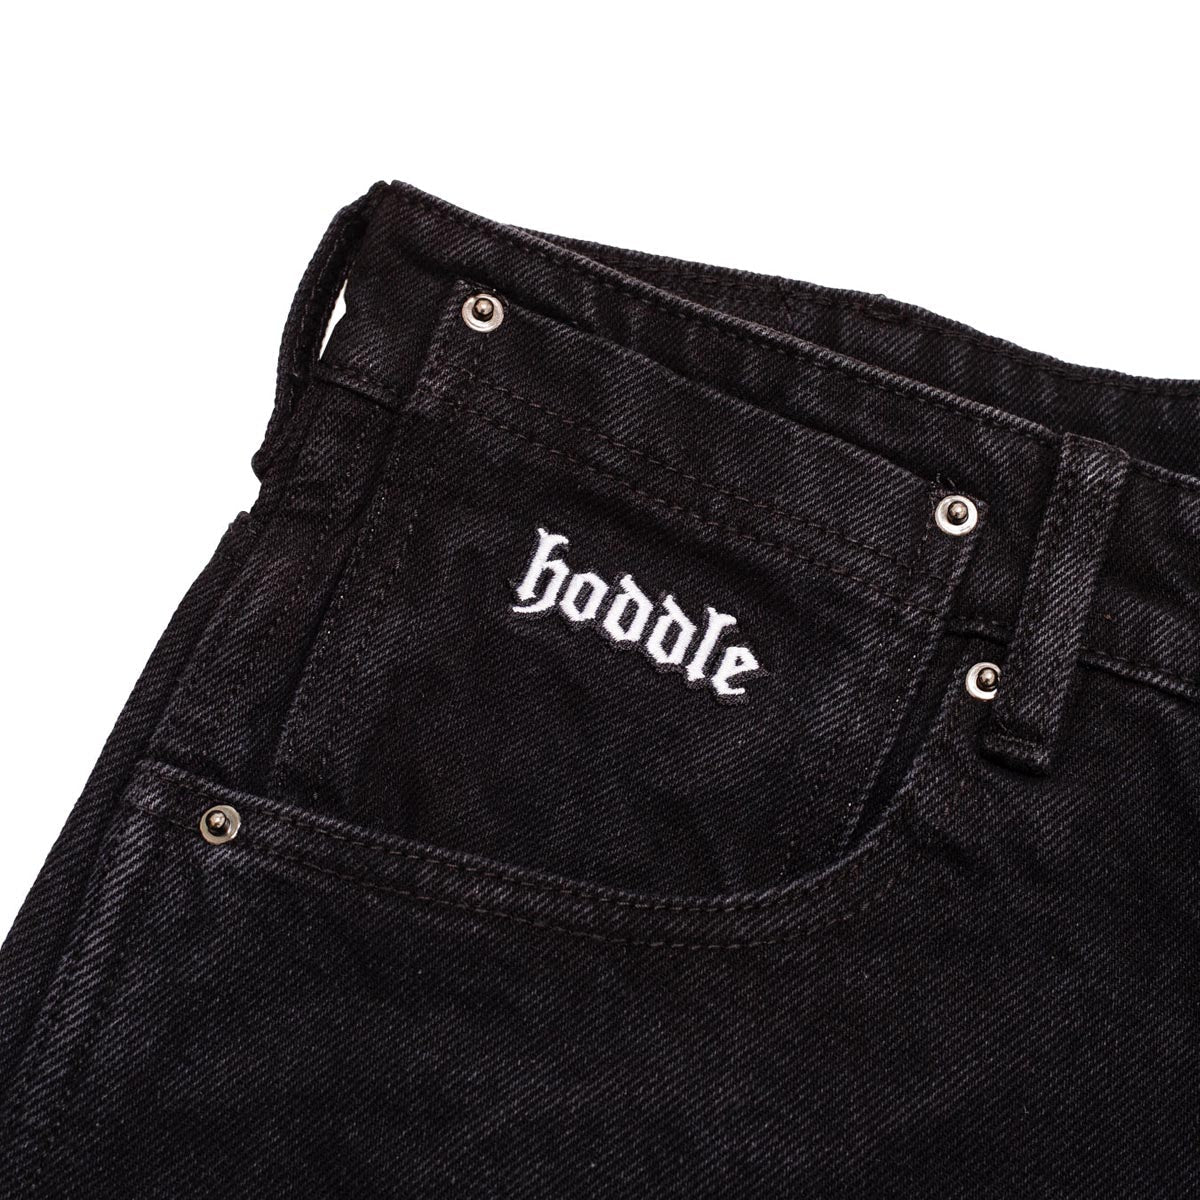 Hoddle 16o Denim Ranger Jeans - Black/Black